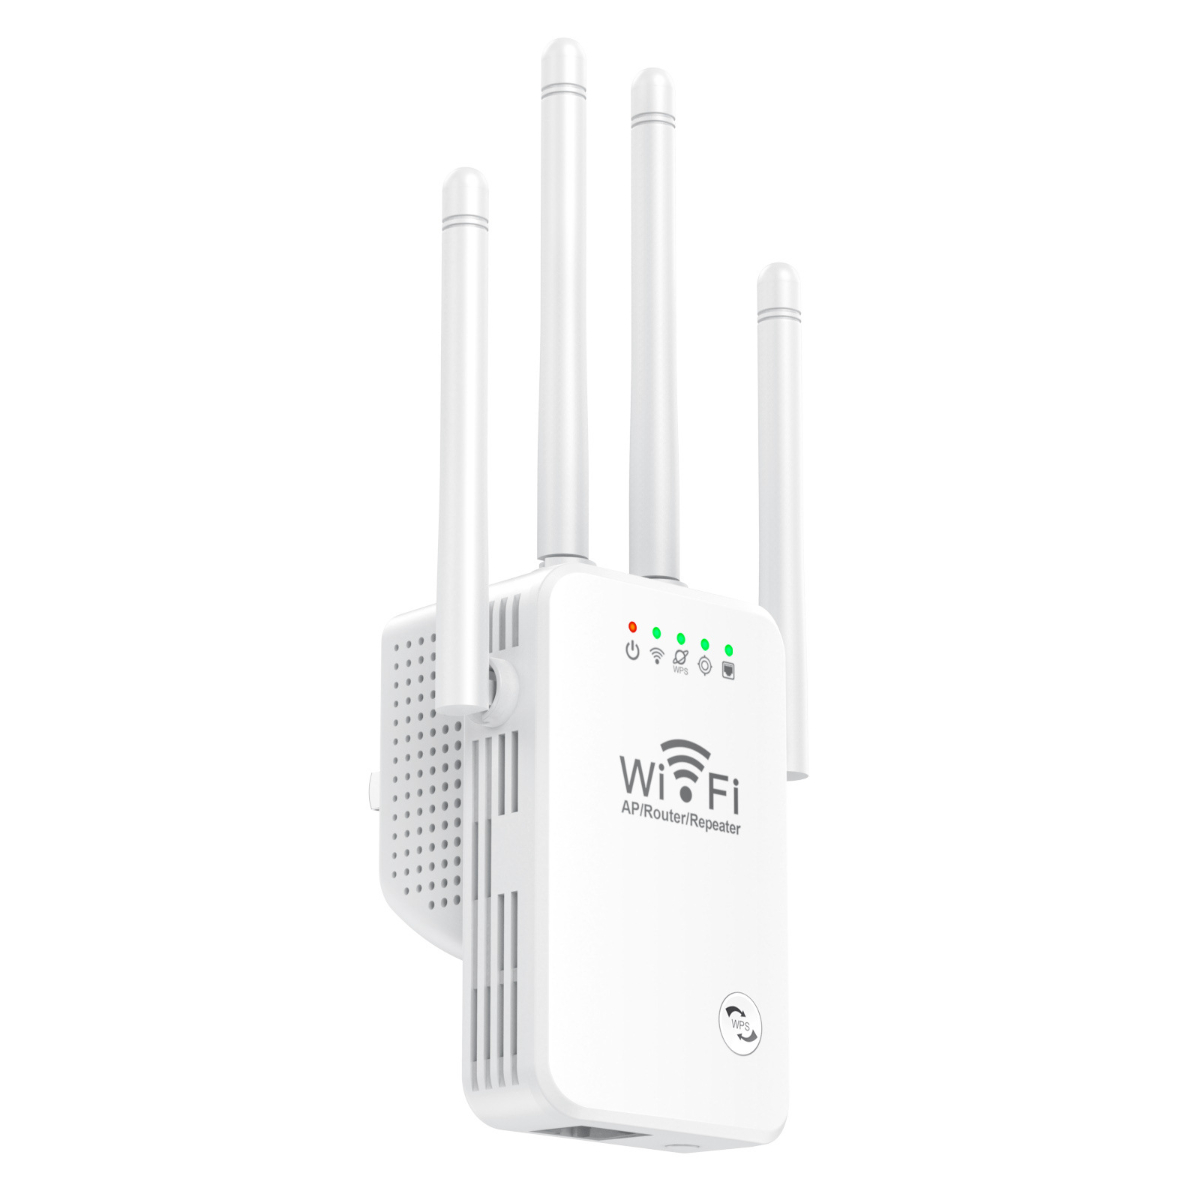 4 schwarz booster netzwerk antennen Drahtloser wifi 300M wireless AP SHAOKE router signal verstärker LAN-Repeater repeater